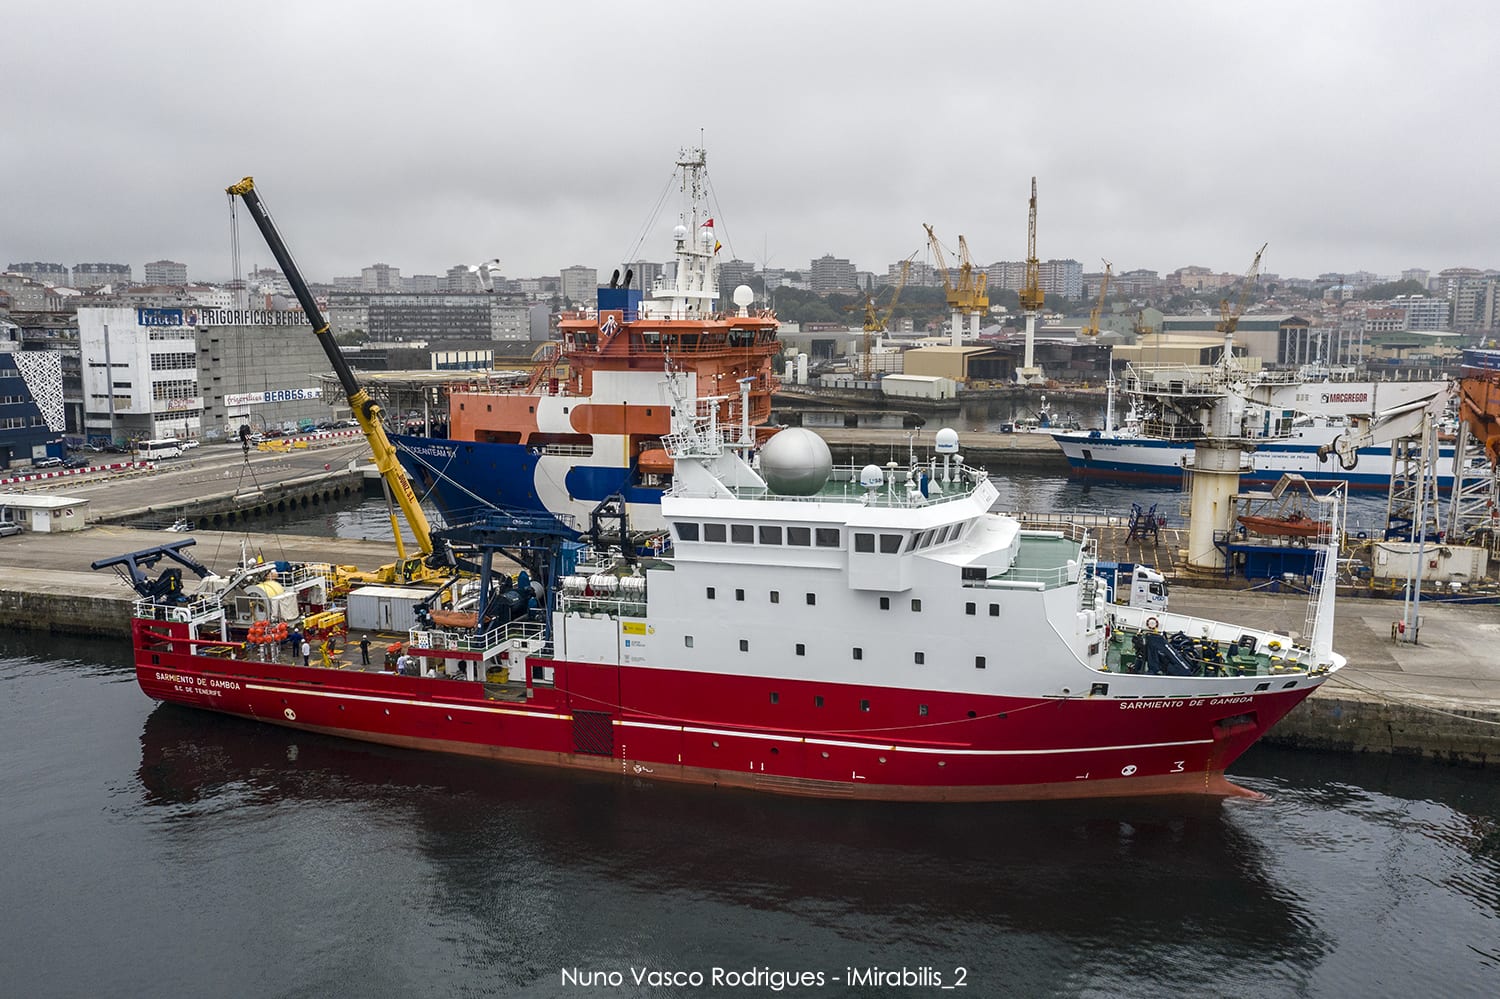 El buque Sarmiento de Gamboa en el puerto de Vigo preparado para el comienzo de iMirabilis2. Nuno Vasco Rodrigues / CSIC